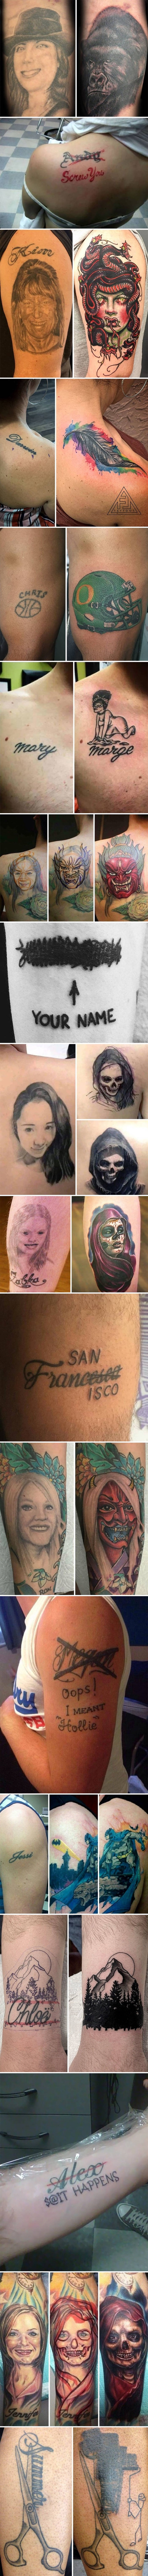 Nakon loših prekida su se na genijalan način riješili tetovaža posvećenih bivšim partnerima